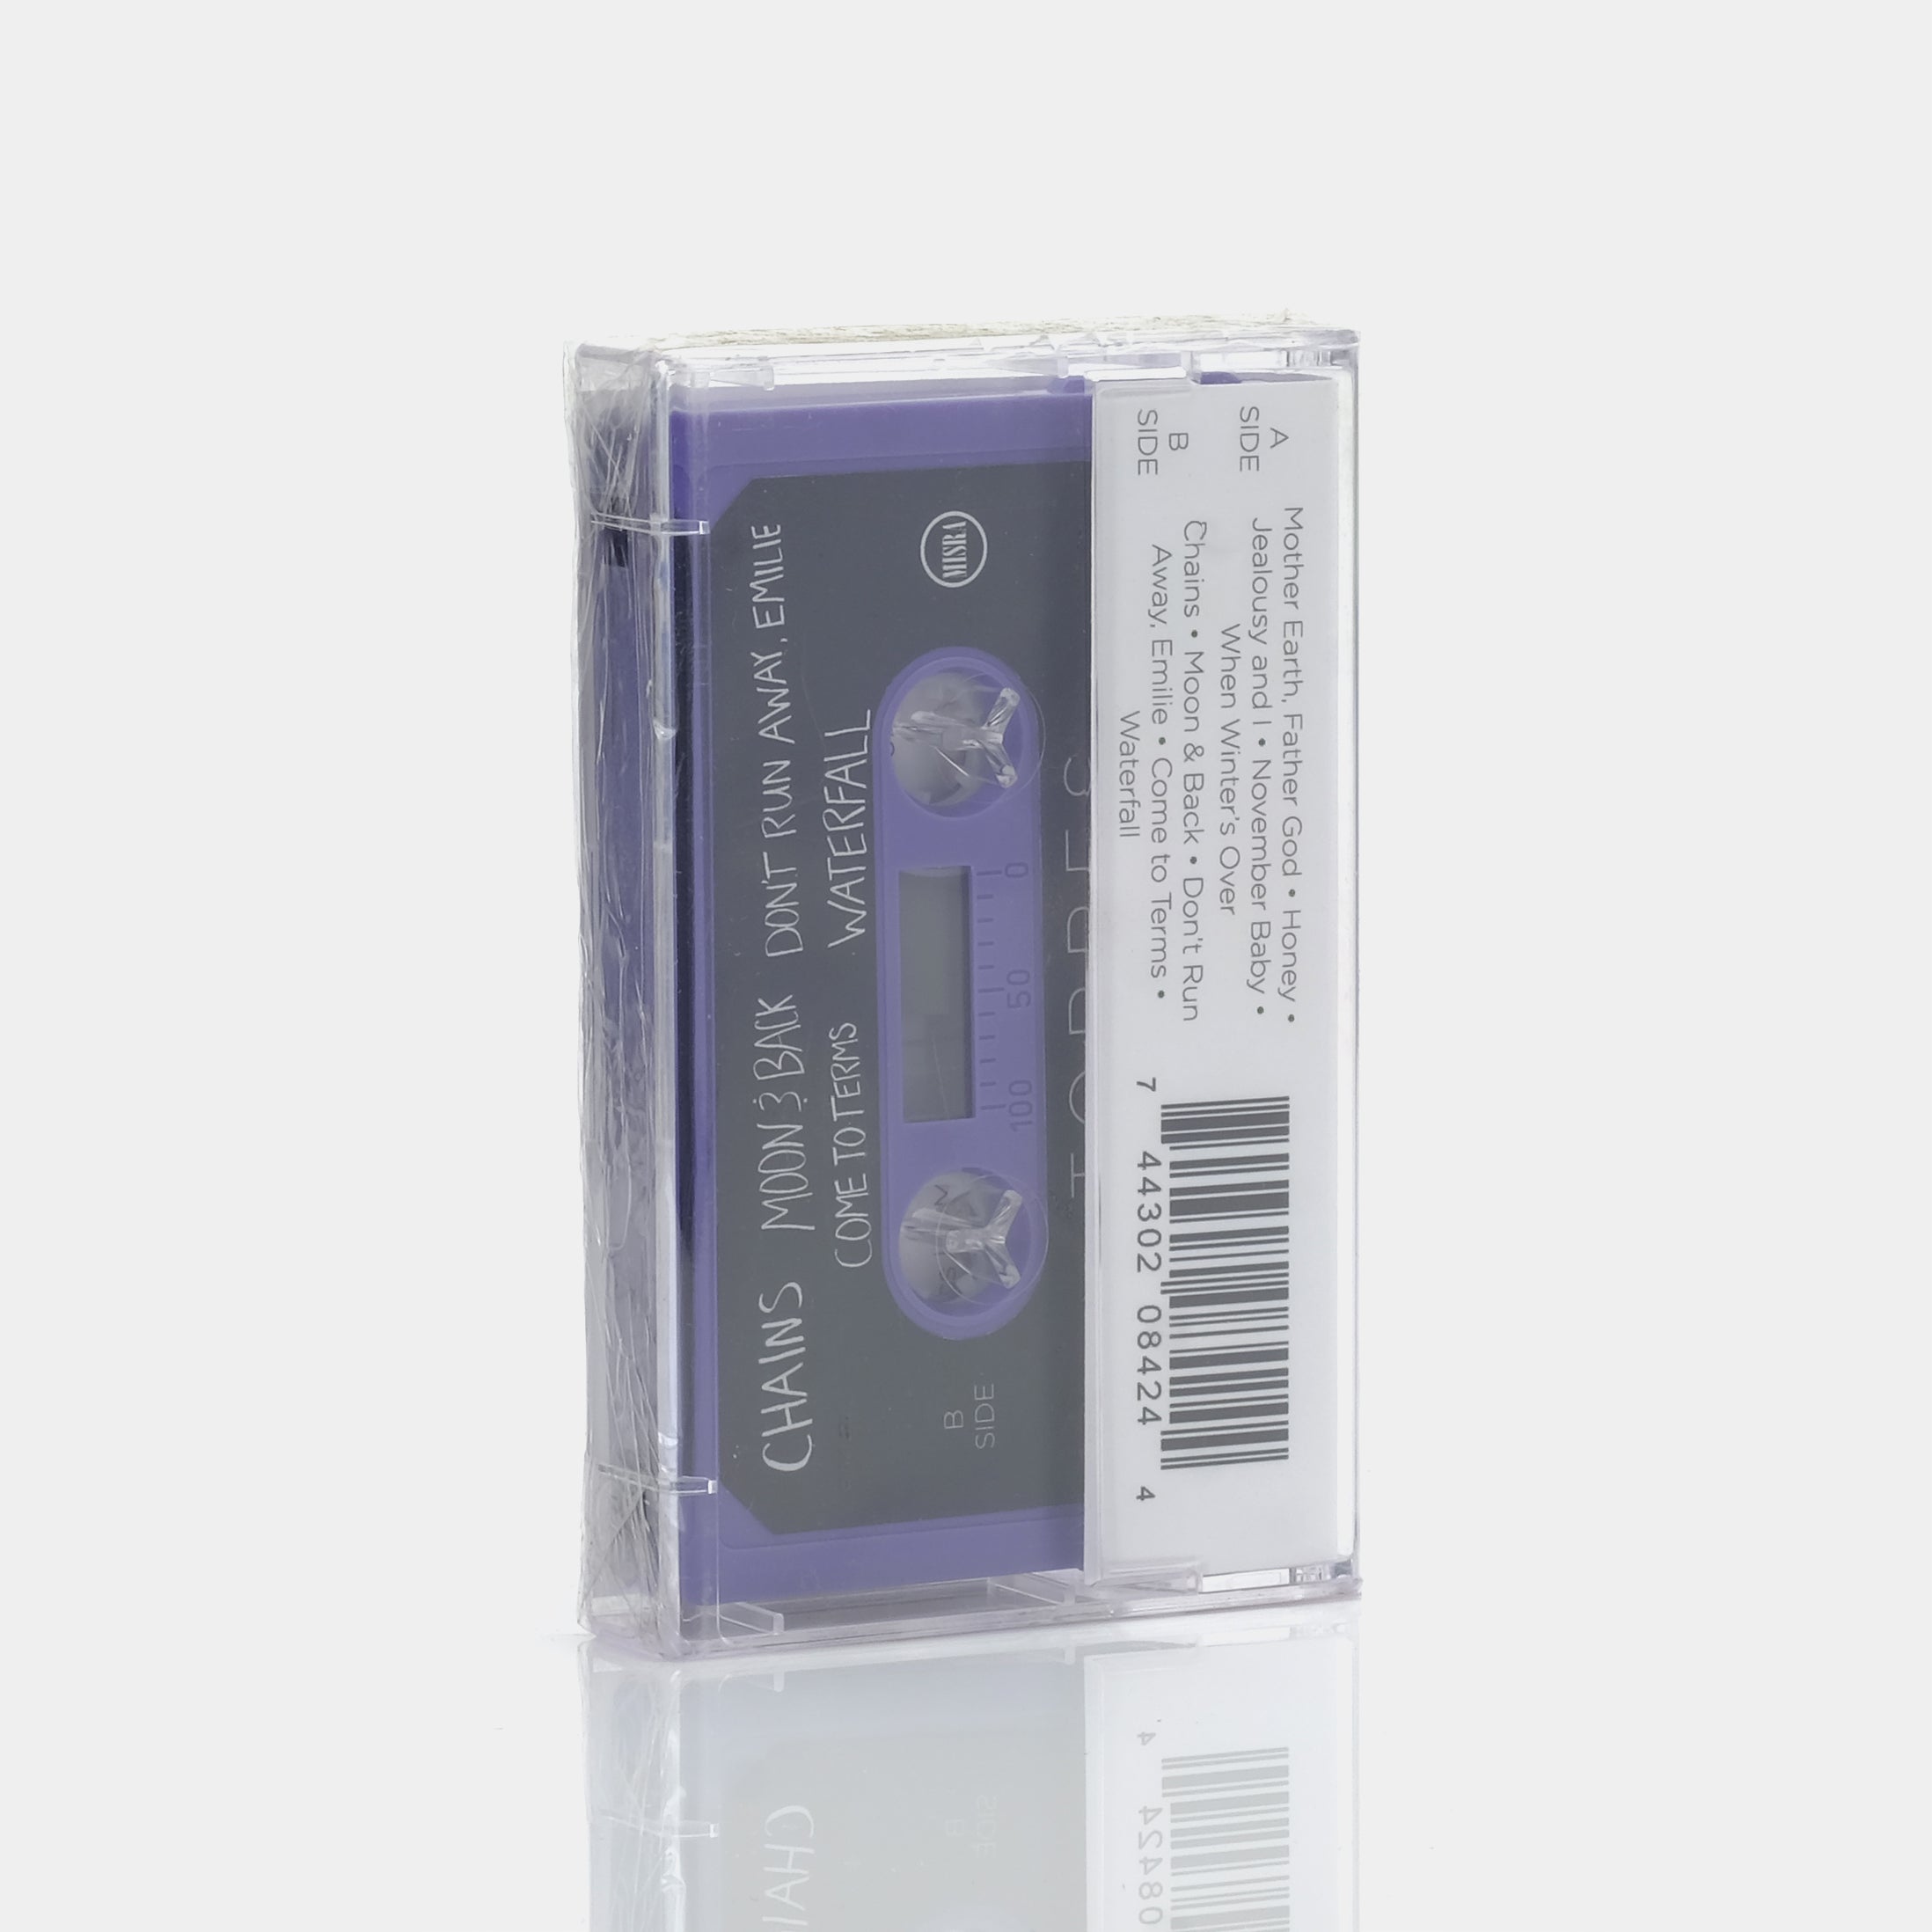 TORRES - Torres Cassette Tape